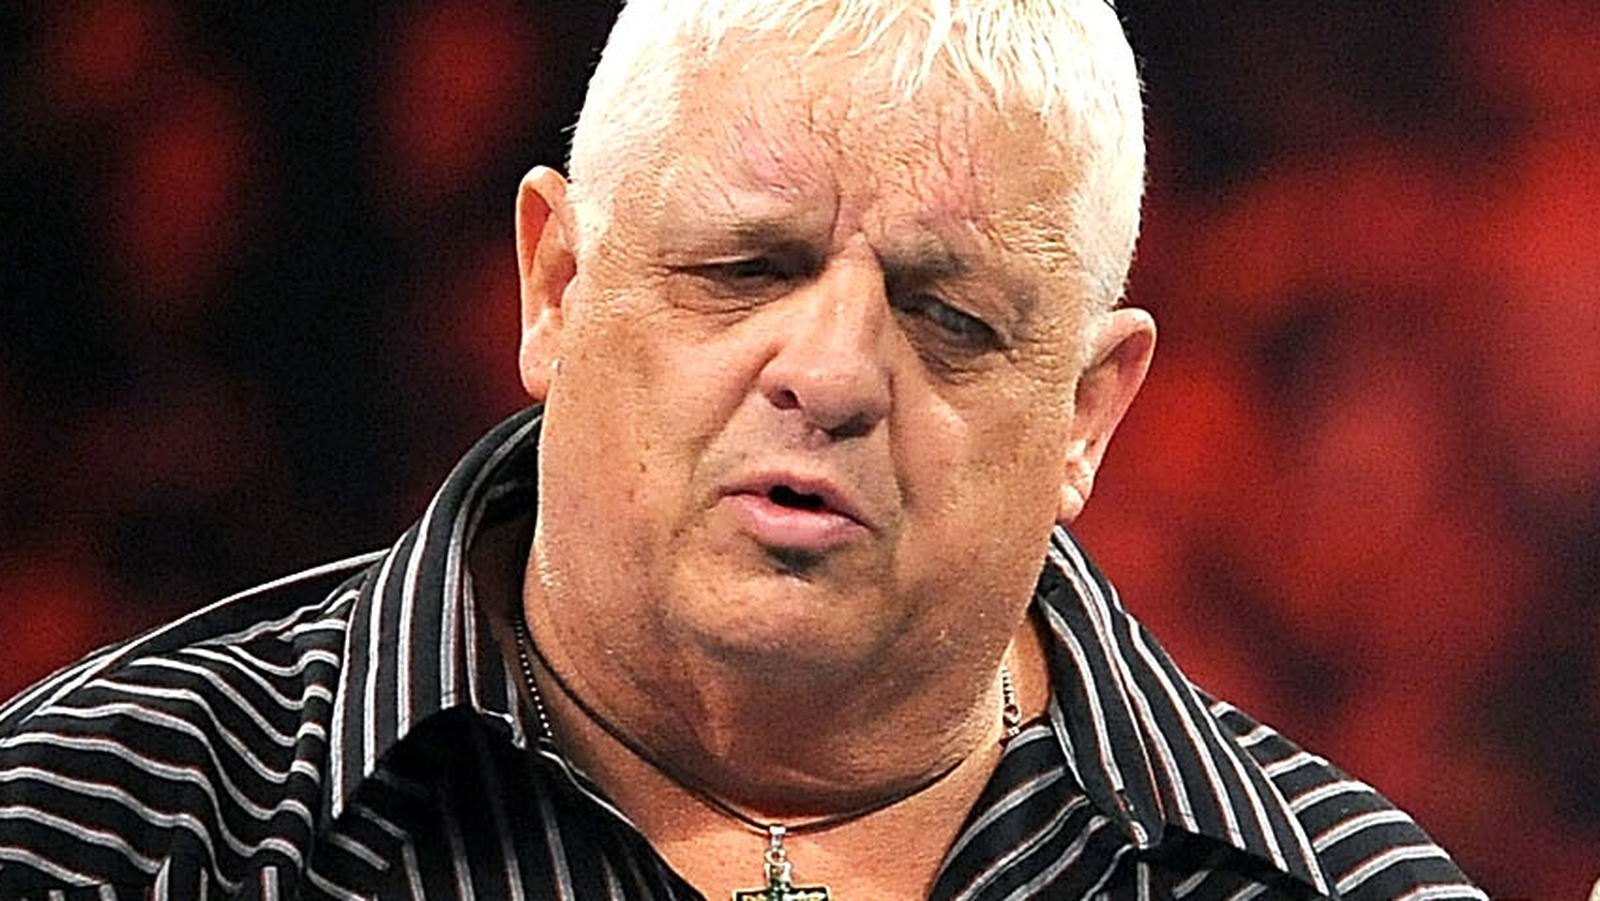 La biografía de Dusty Rhodes y otra programación de la WWE regresan a A&E en febrero